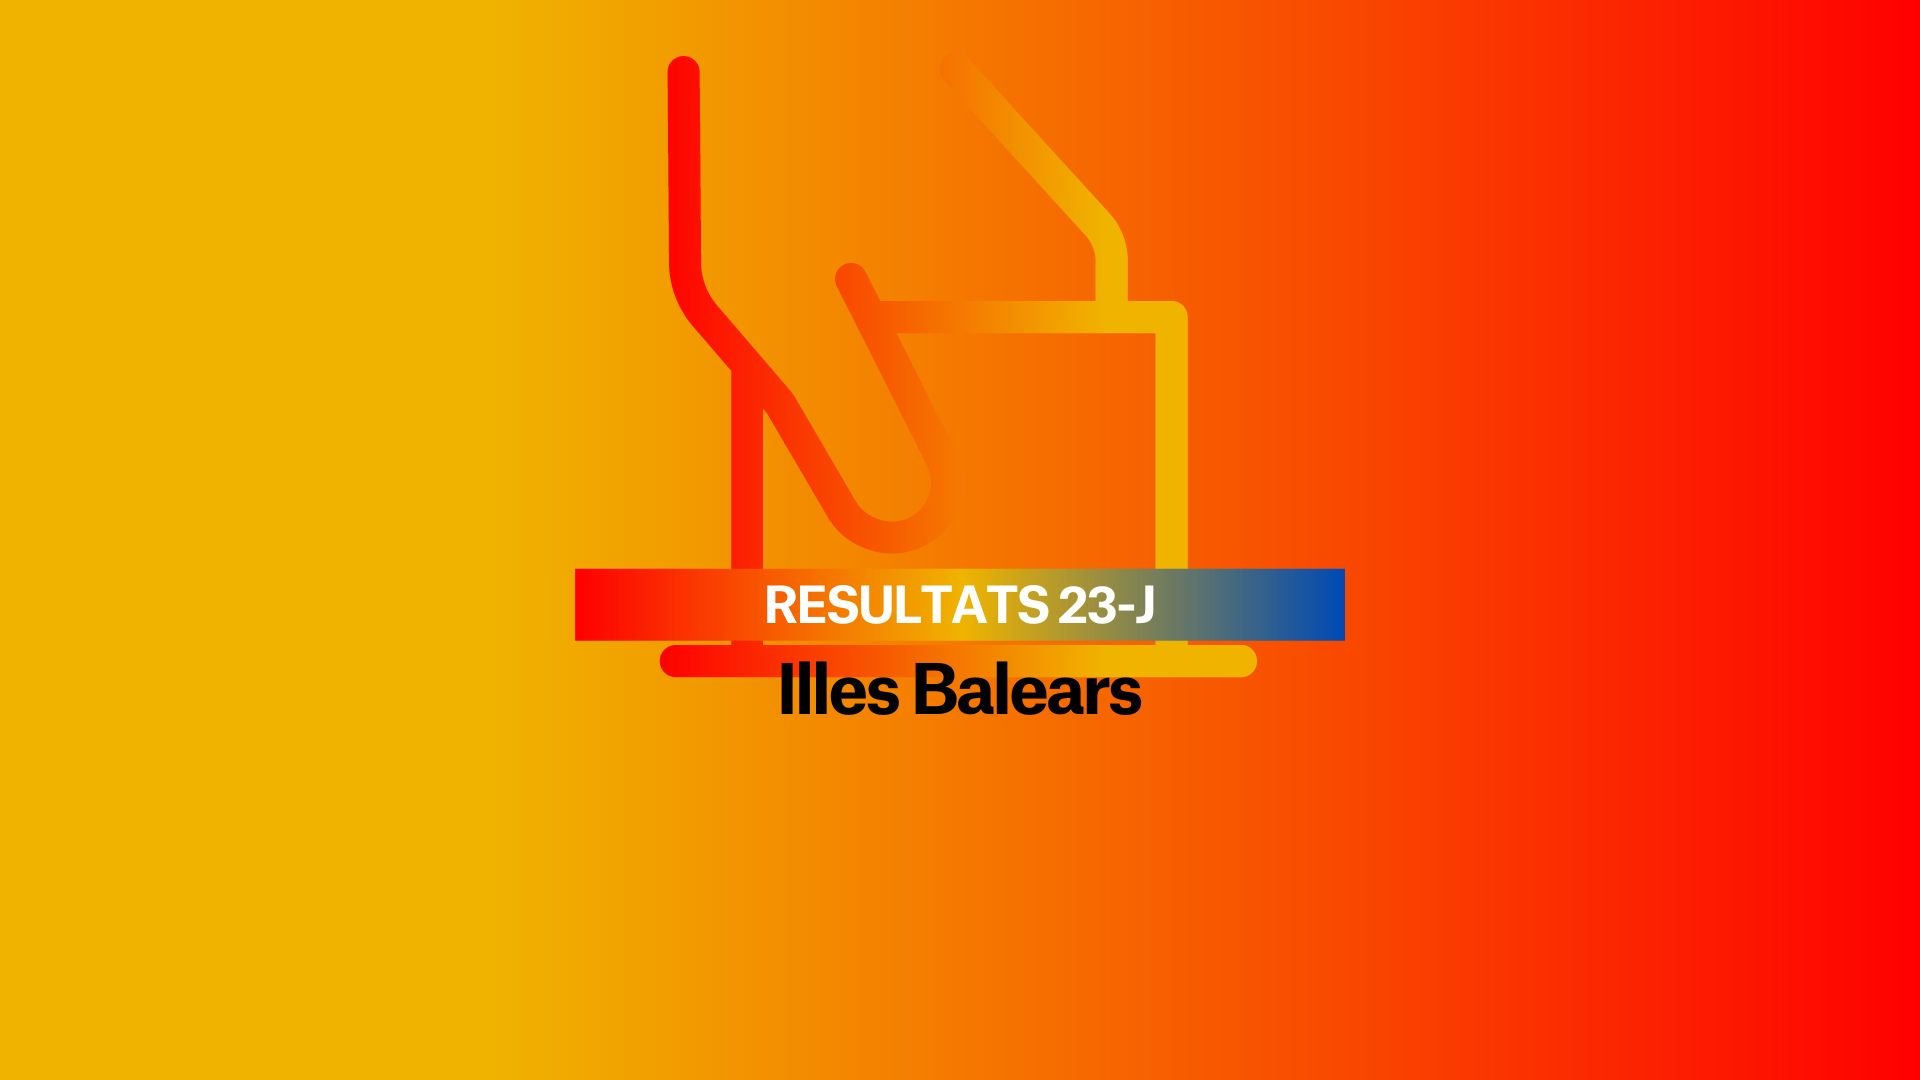 Resultados Elecciones Generales 2023 en Islas Baleares: El PP se impone en las Illes Balears